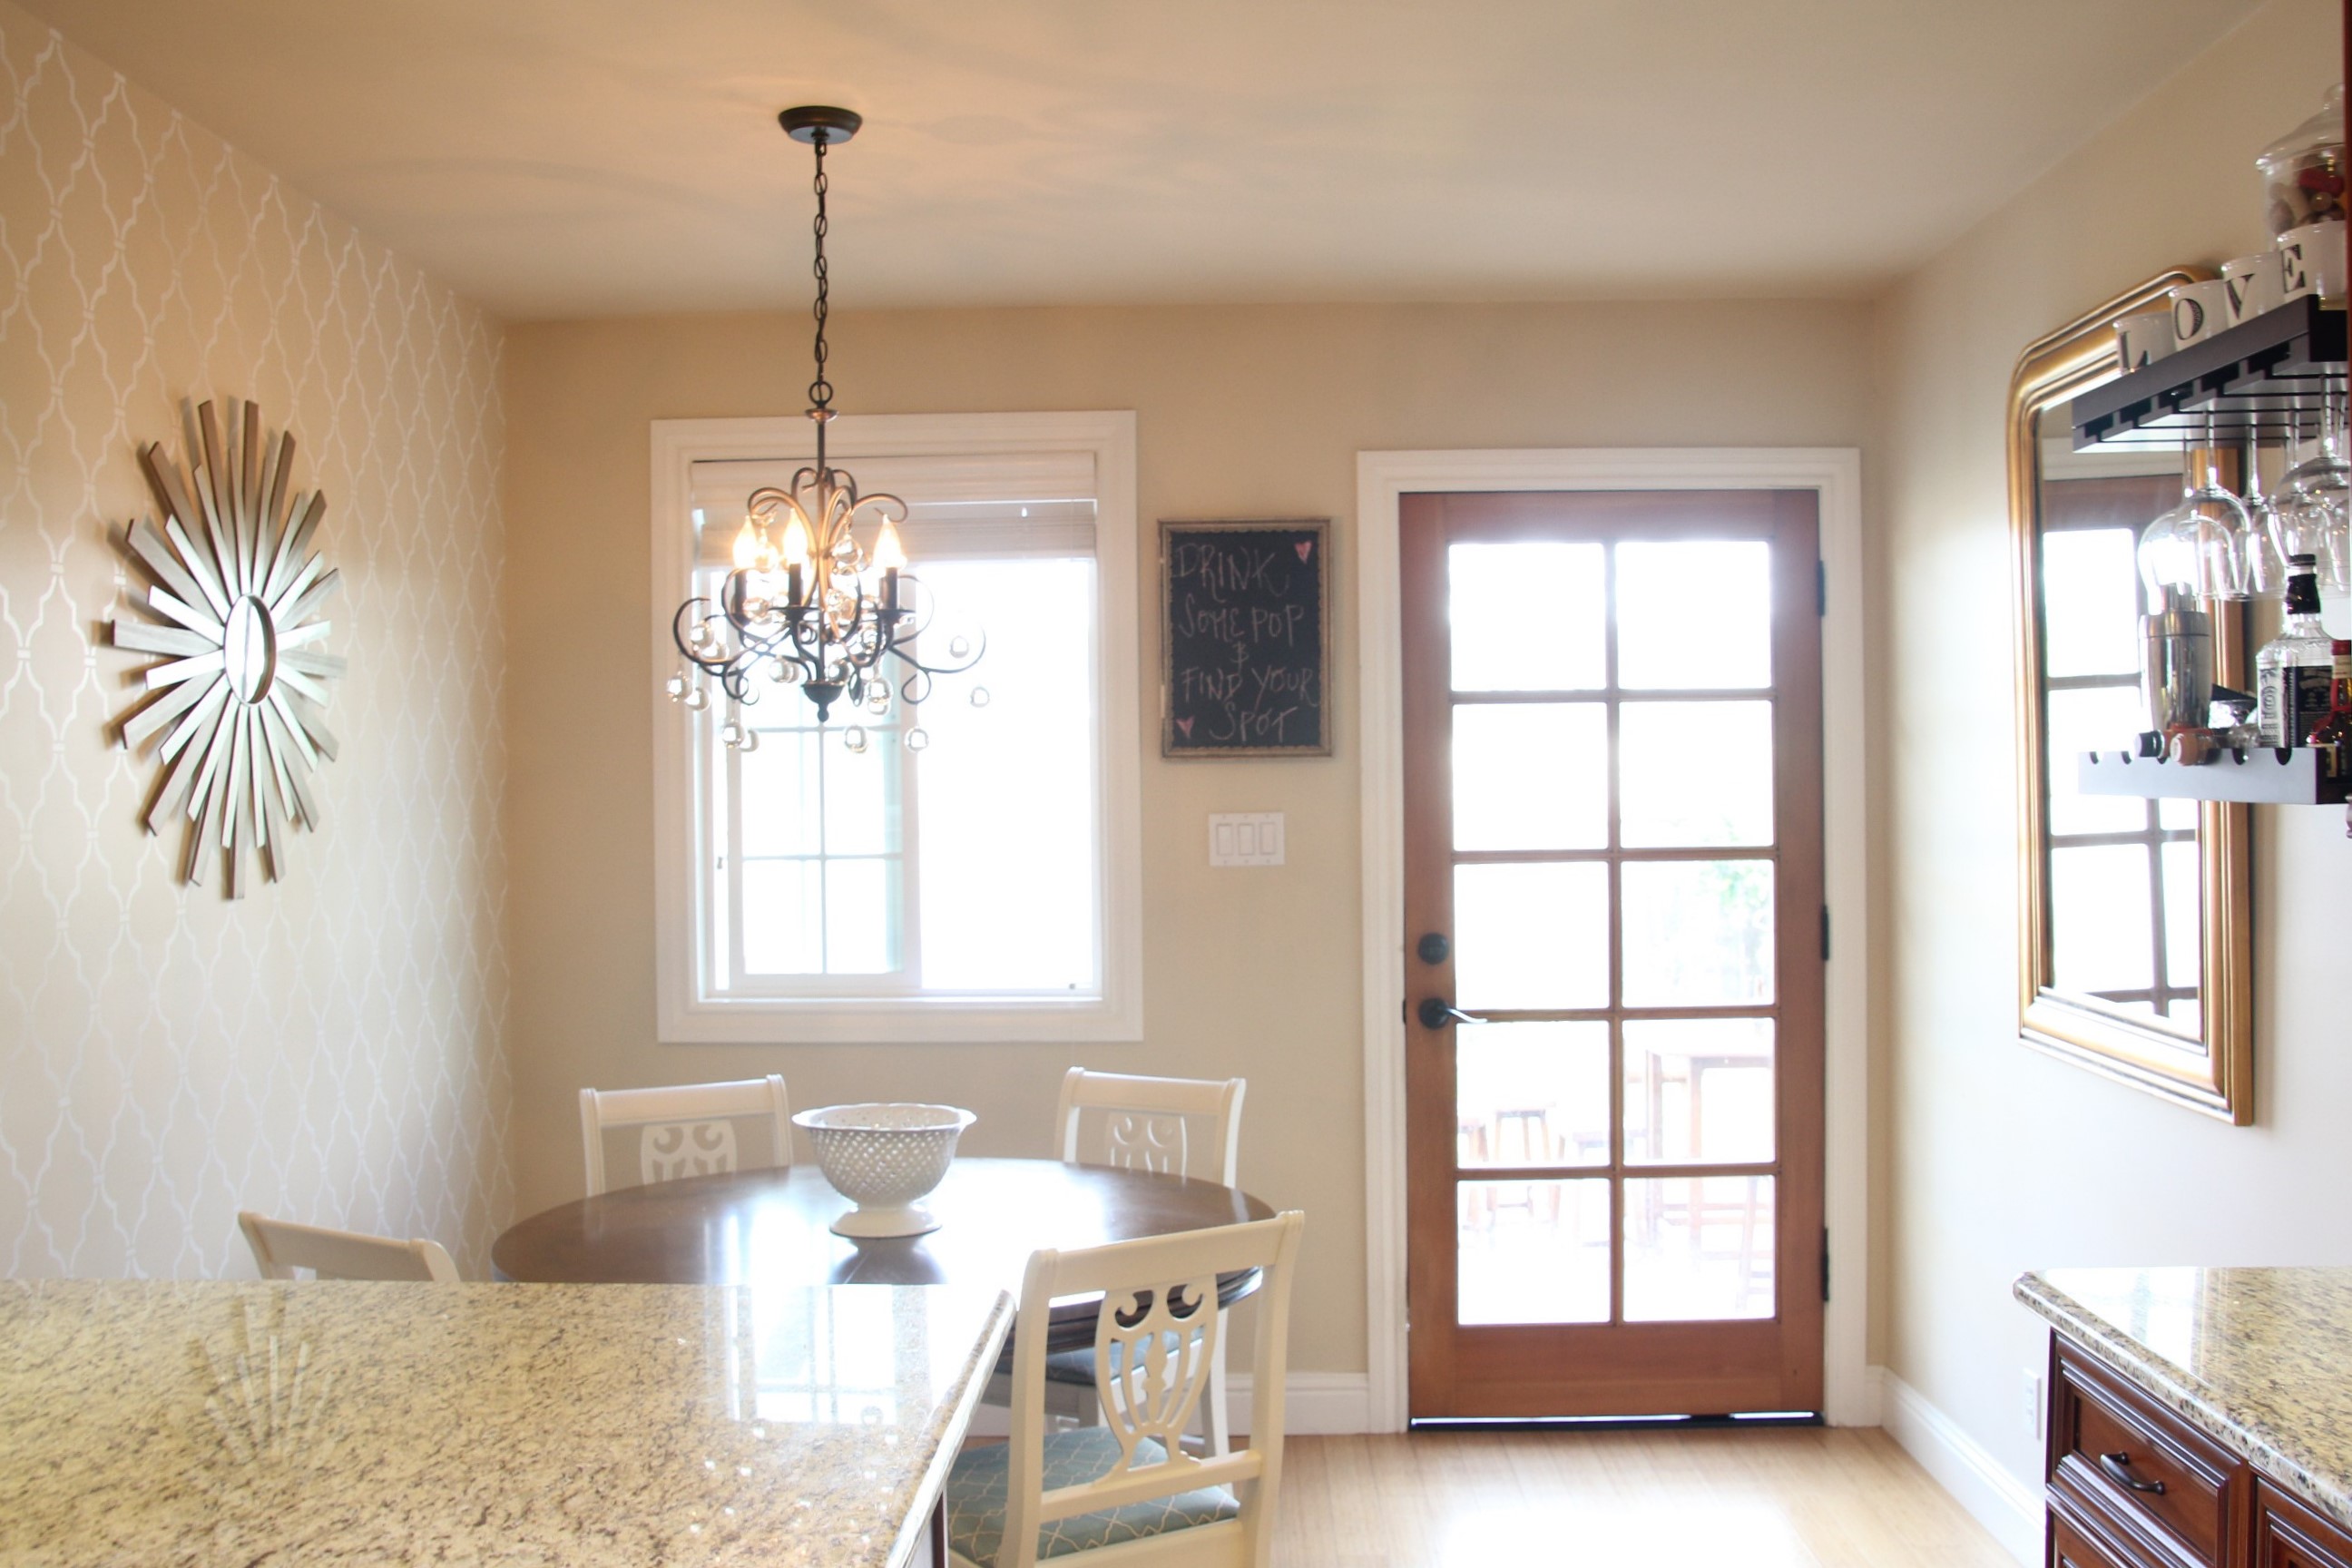 Satin Or Eggshell Paint For Living Room Modern House 